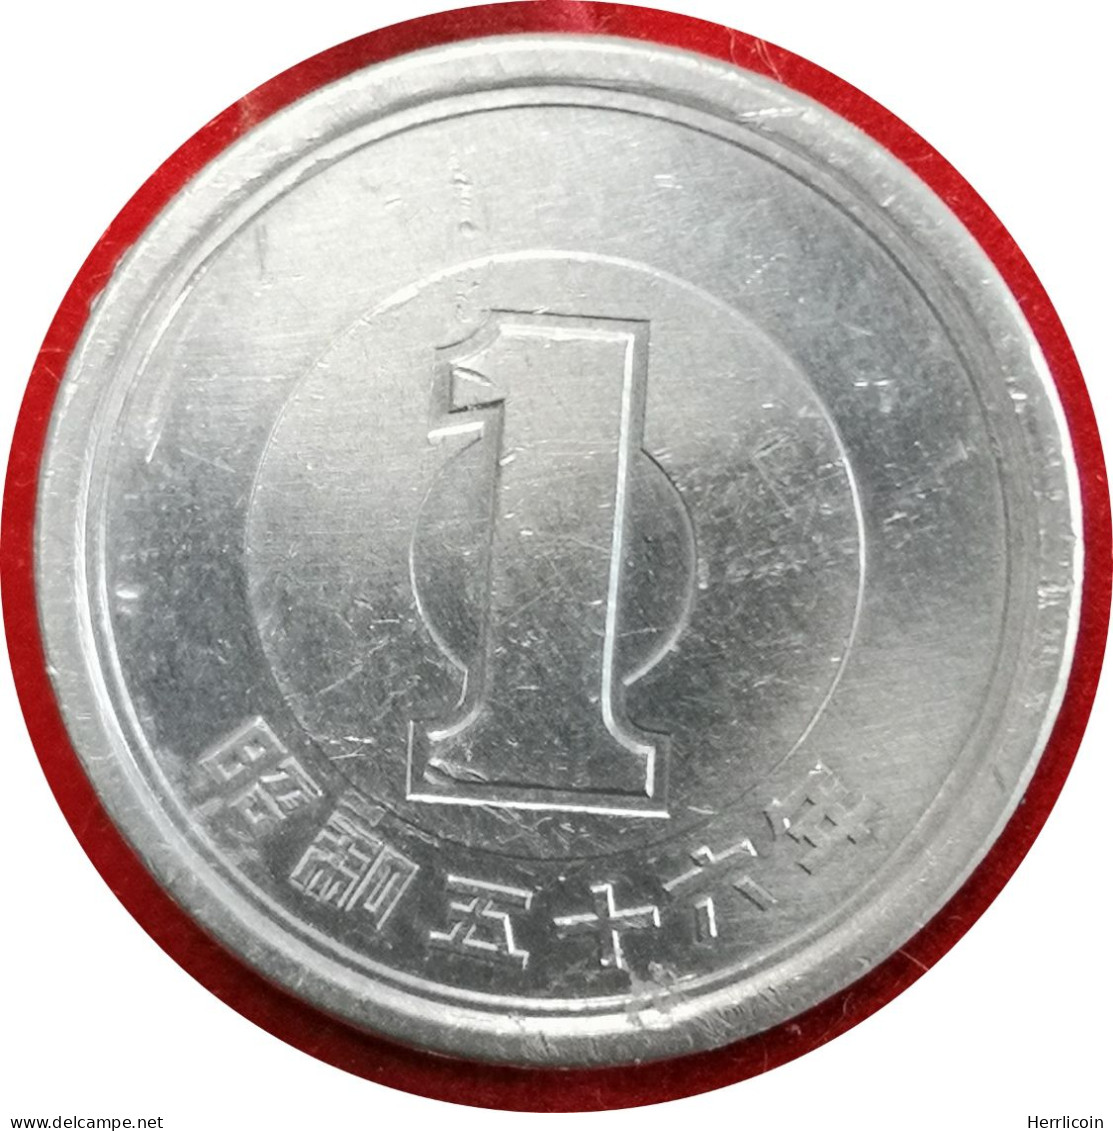 Monnaie Japon - 1985 - 10 Yen - Shōwa - Japan